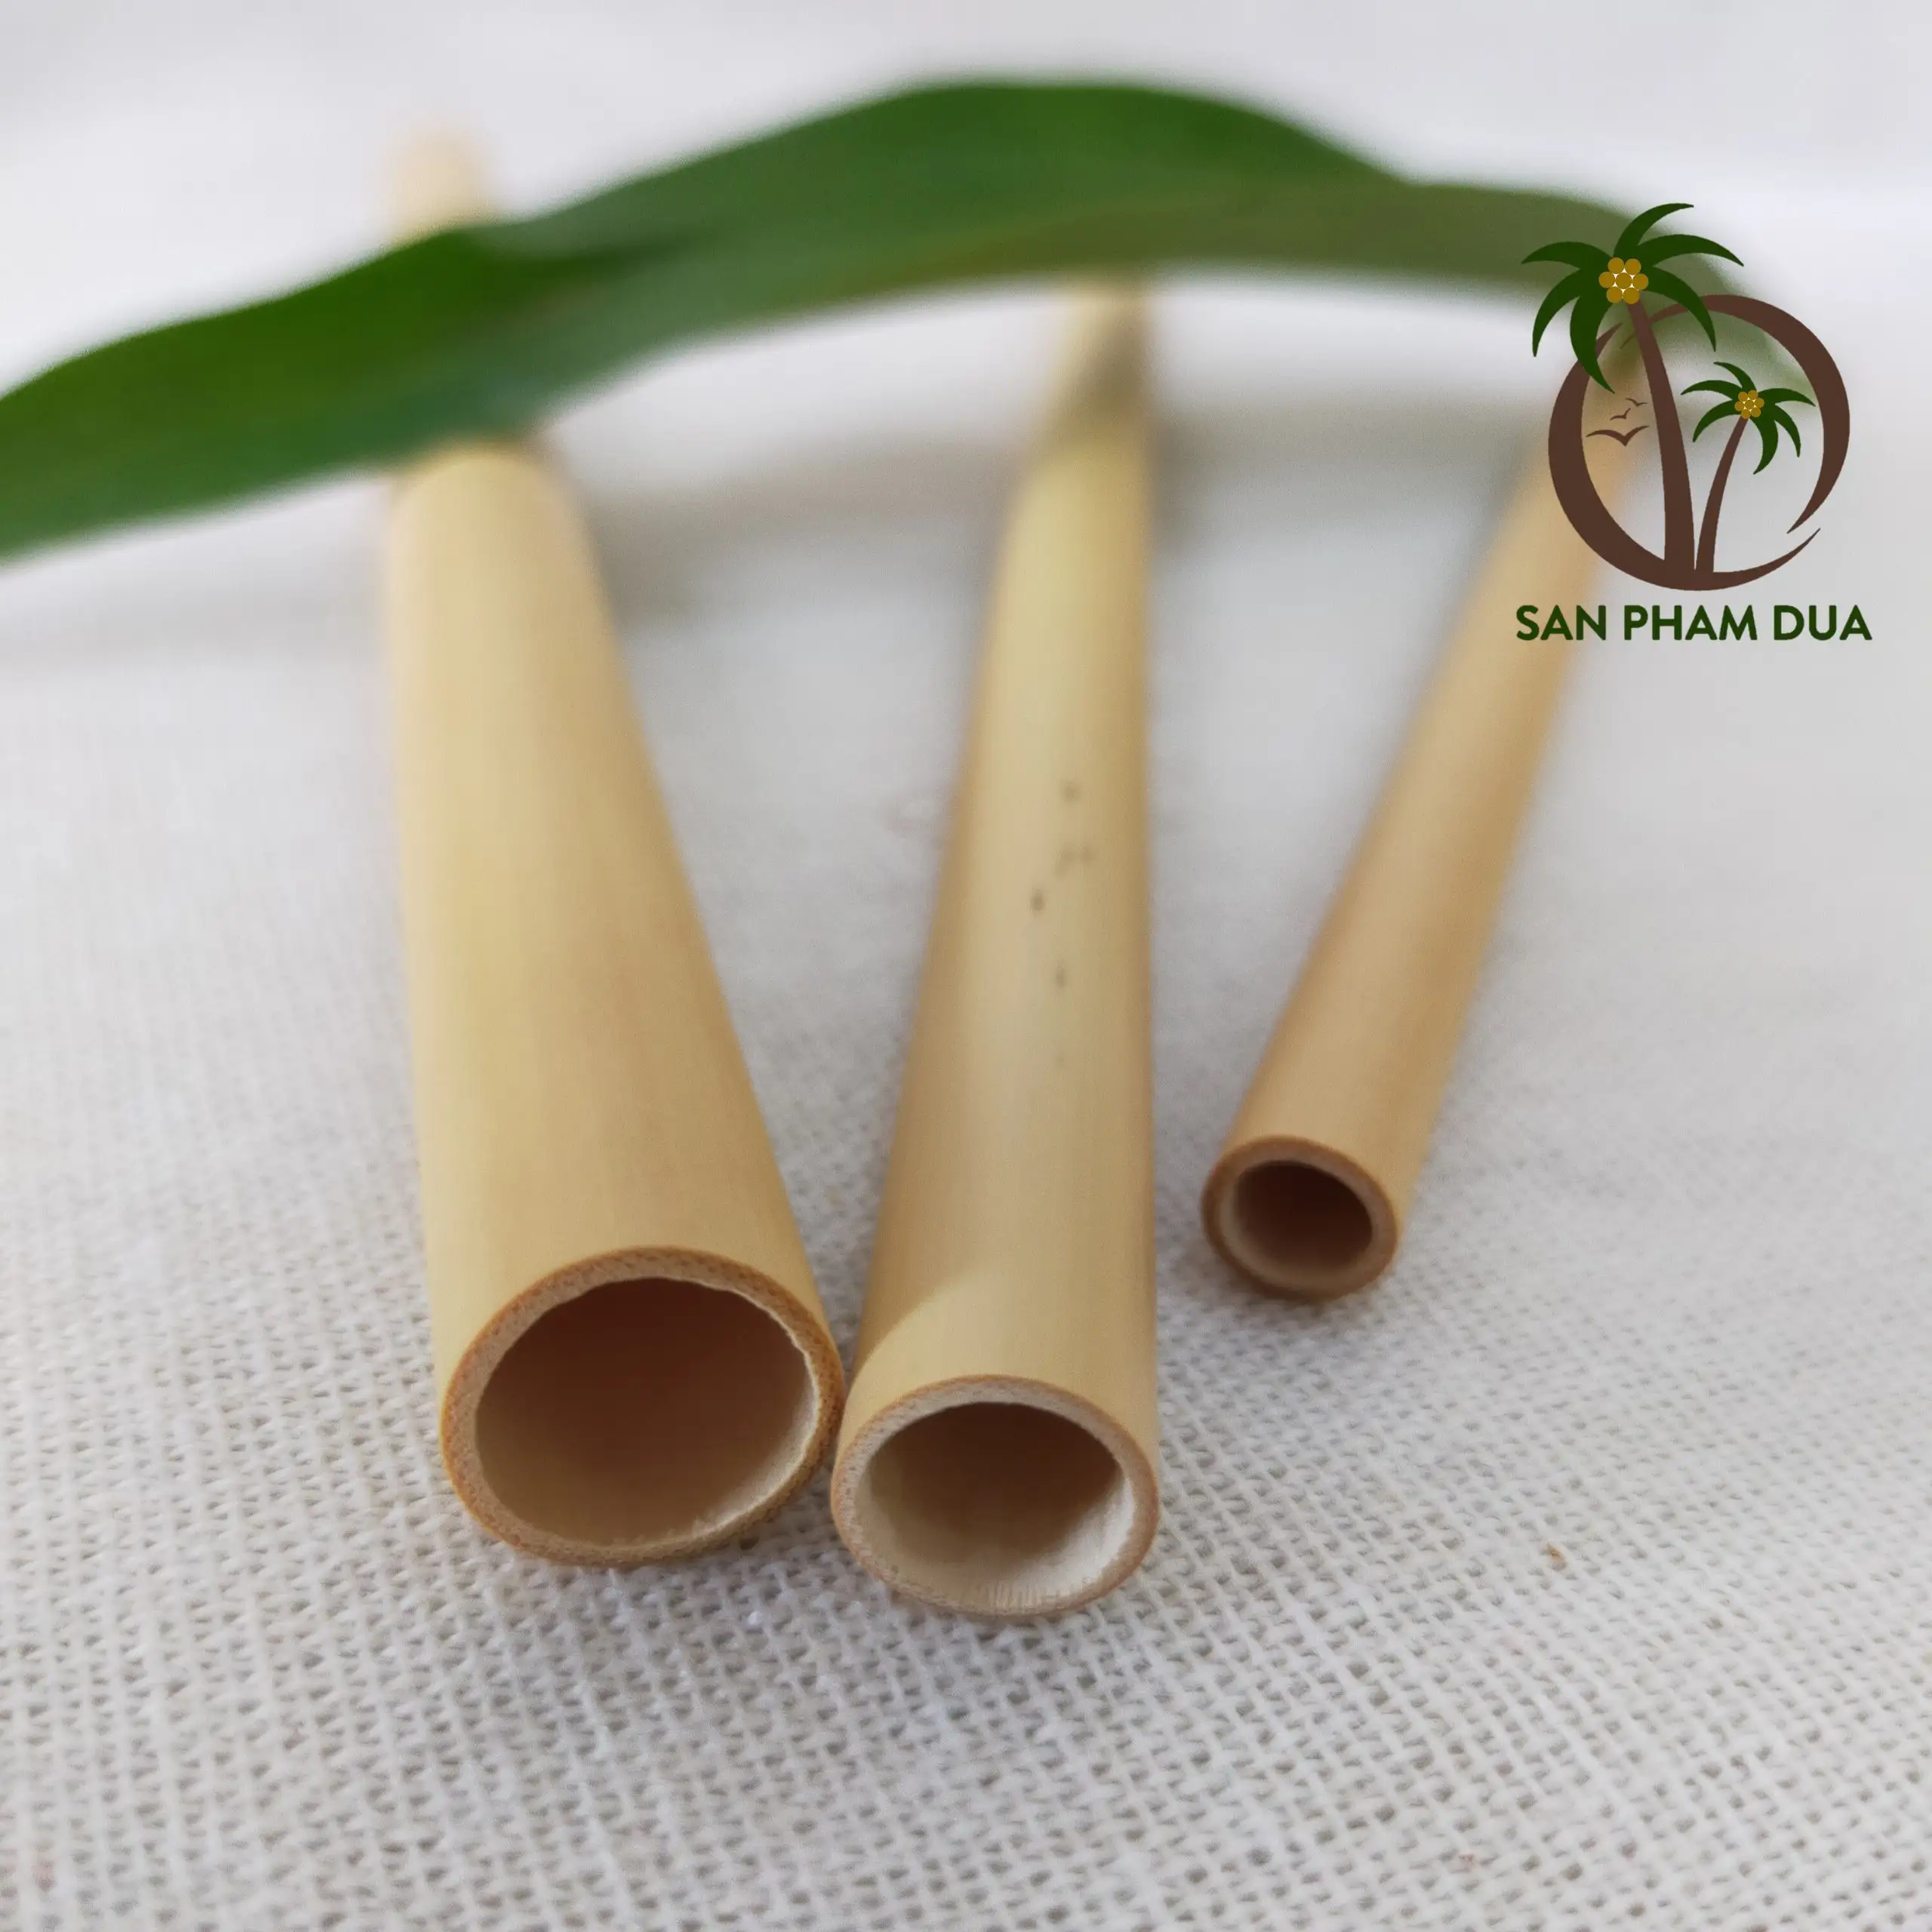 Canudos de bambu de alta qualidade fornecedor/canudos de bambu conjuntos para festa/produtos ecológicos e sustentáveis do vietnã